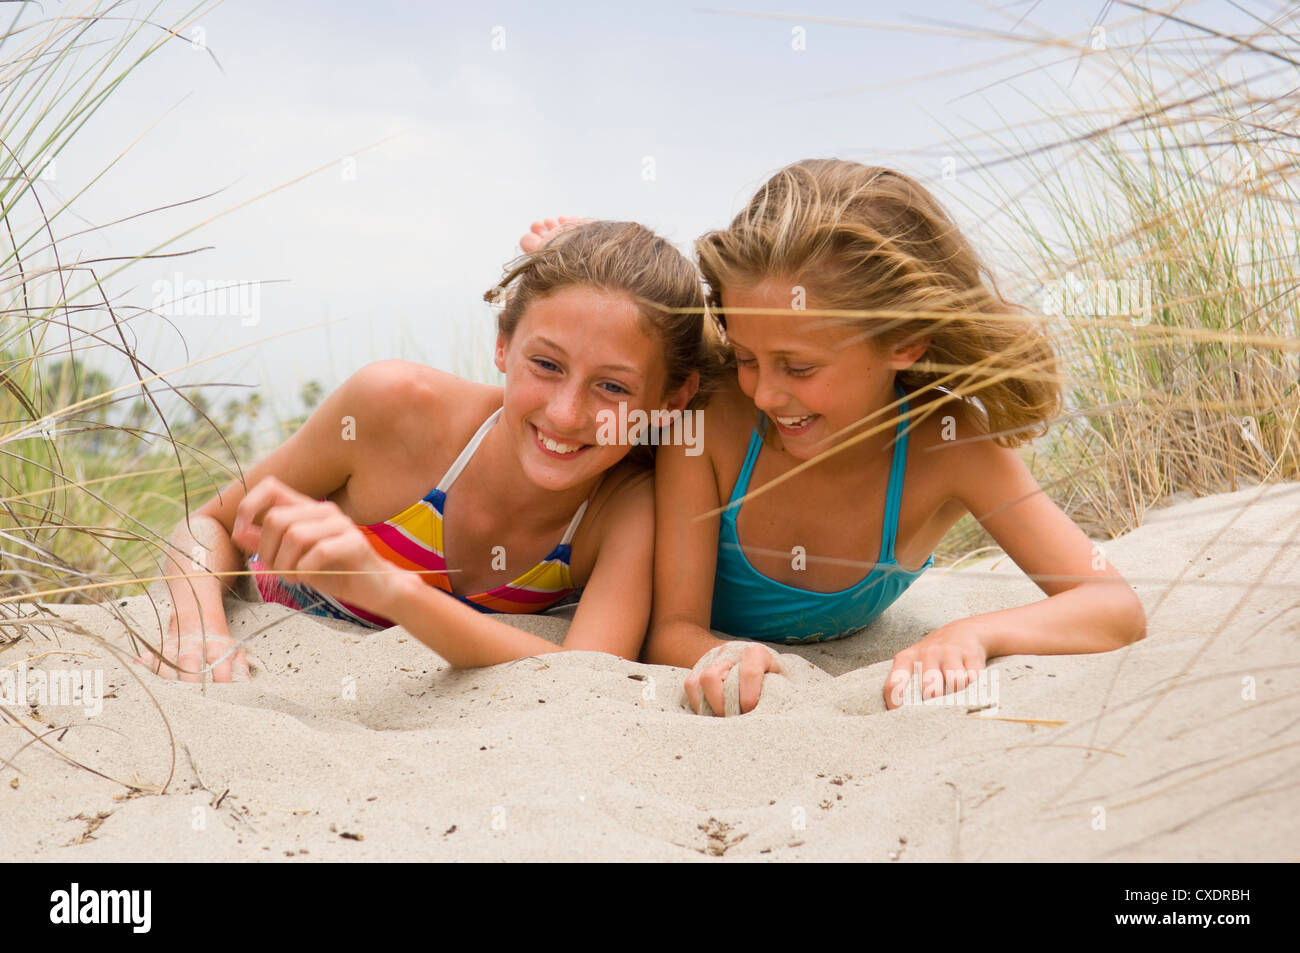 эротика с юными девочками на пляже фото 20